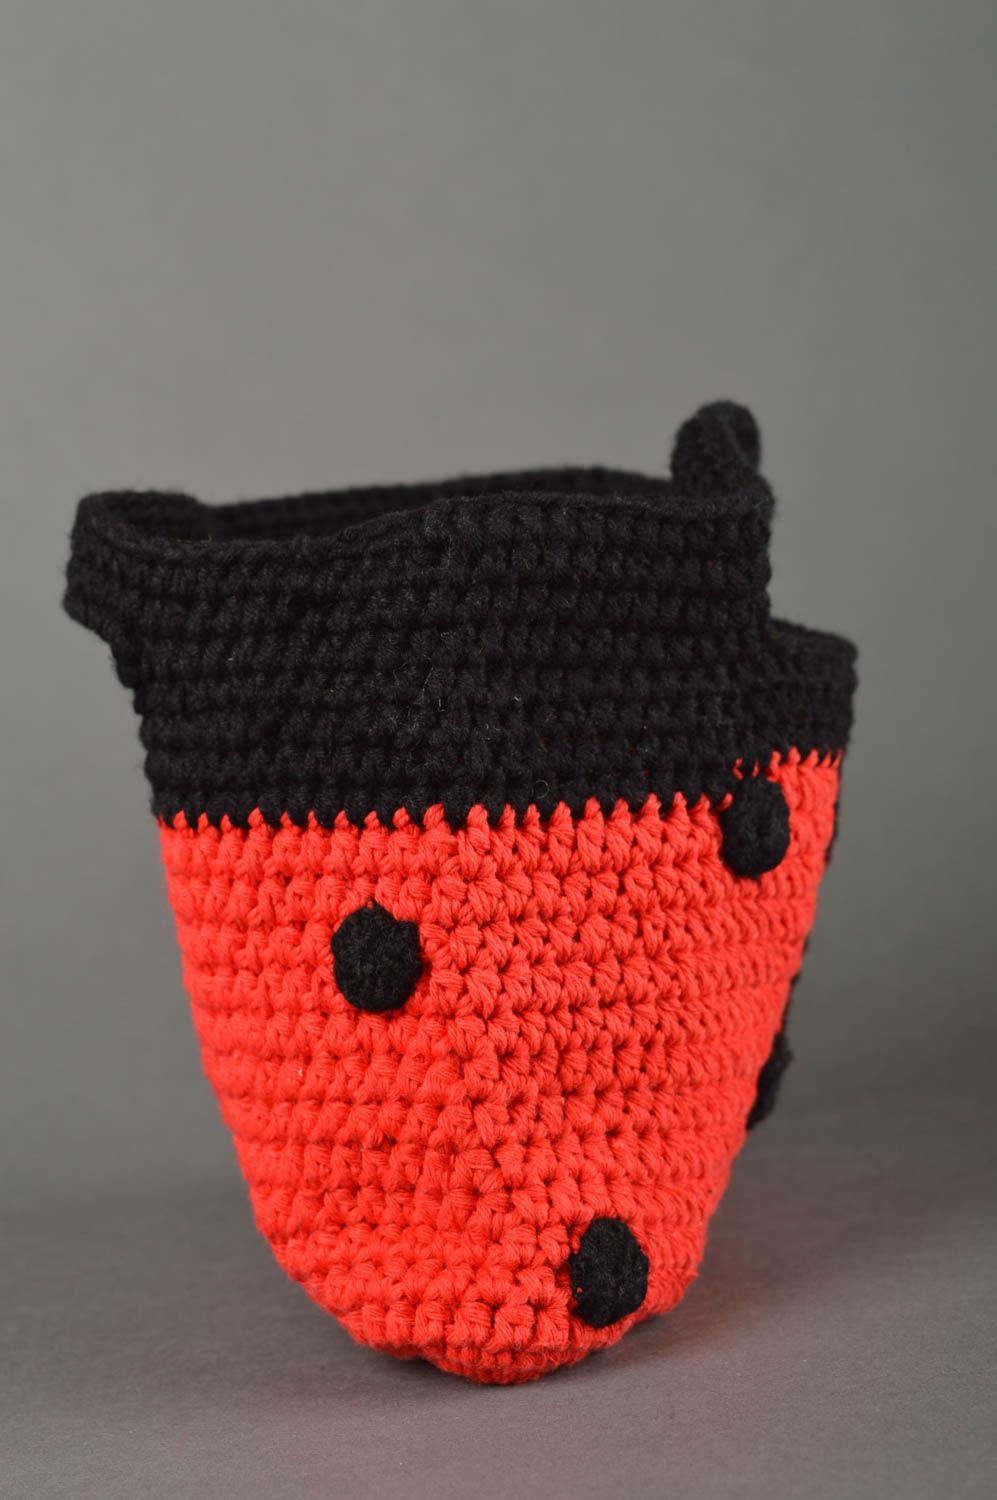 Handmade Kinder Tasche Stoff Tragetasche Kinder Accessoire gehäkelt schwarz rot foto 5